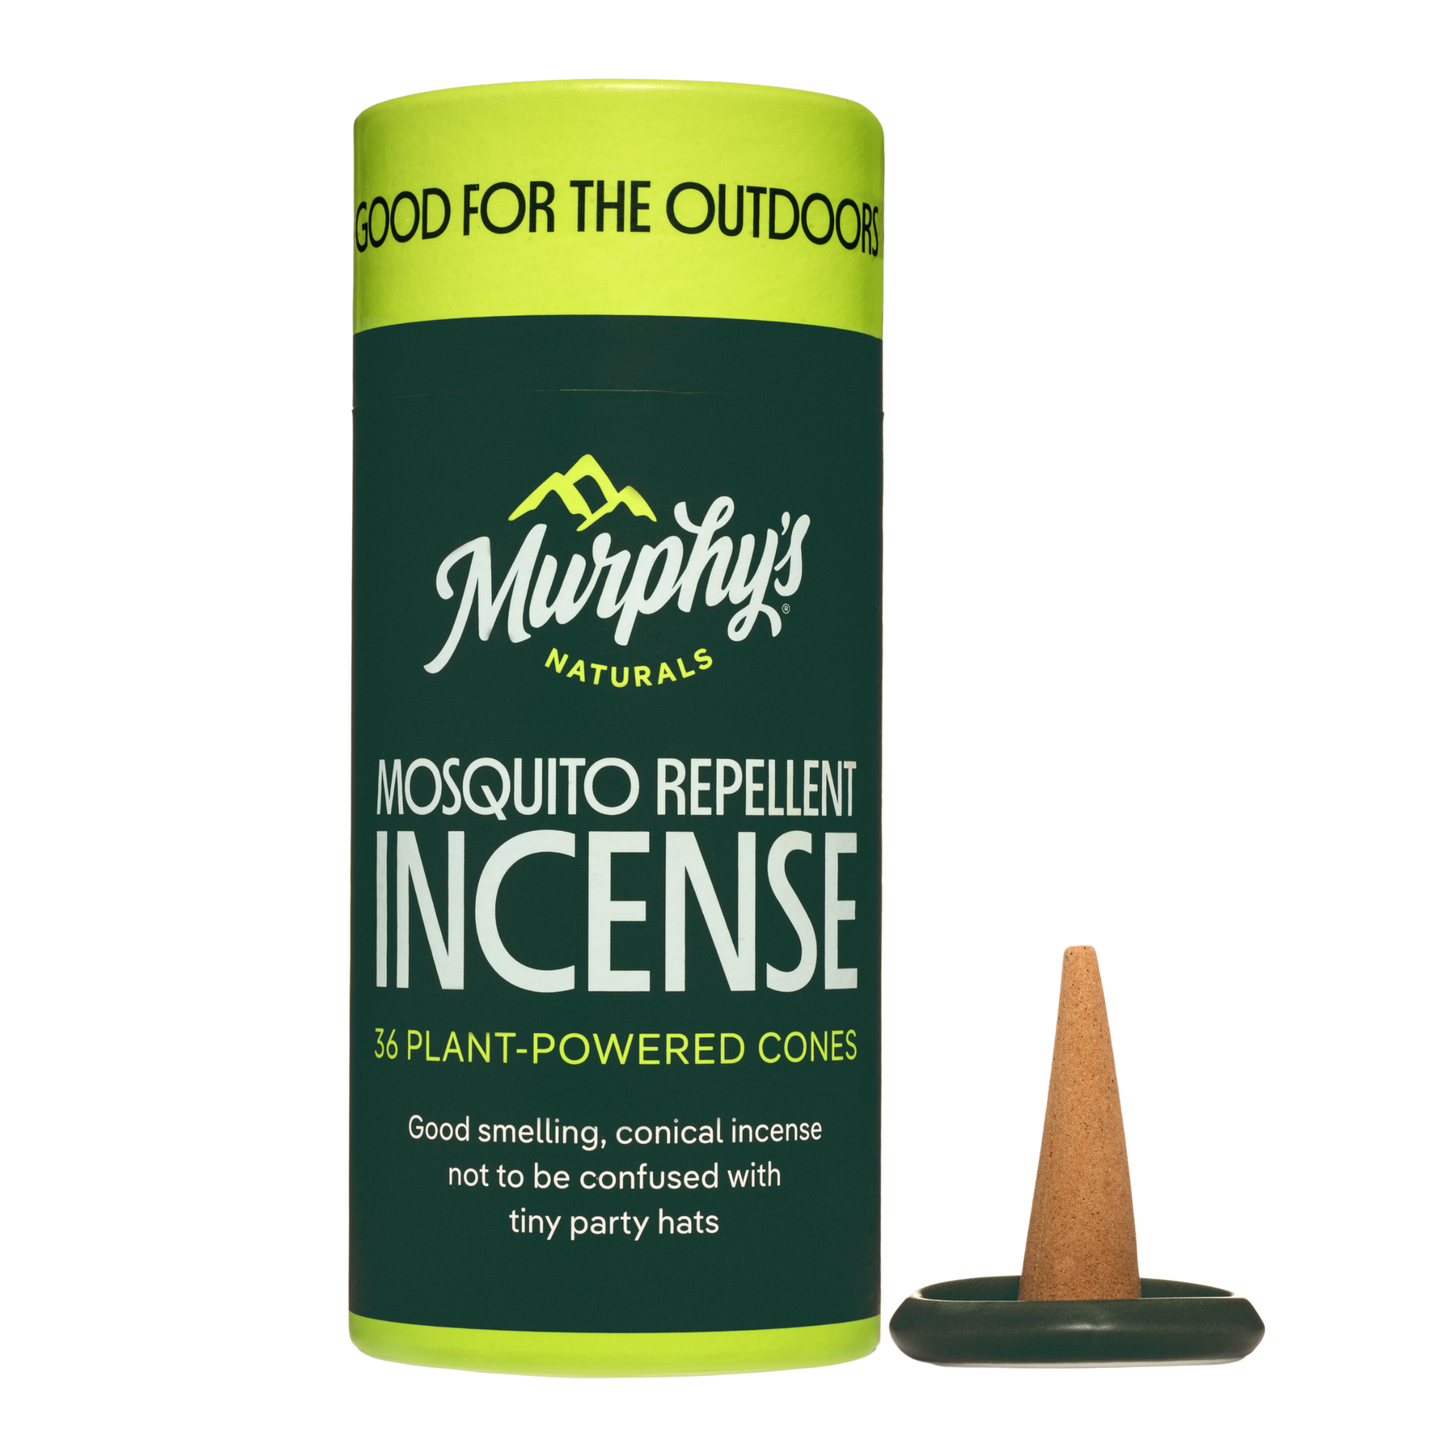 Mosquito Repellent Incense Cones (36 cones/tube) Case of 6